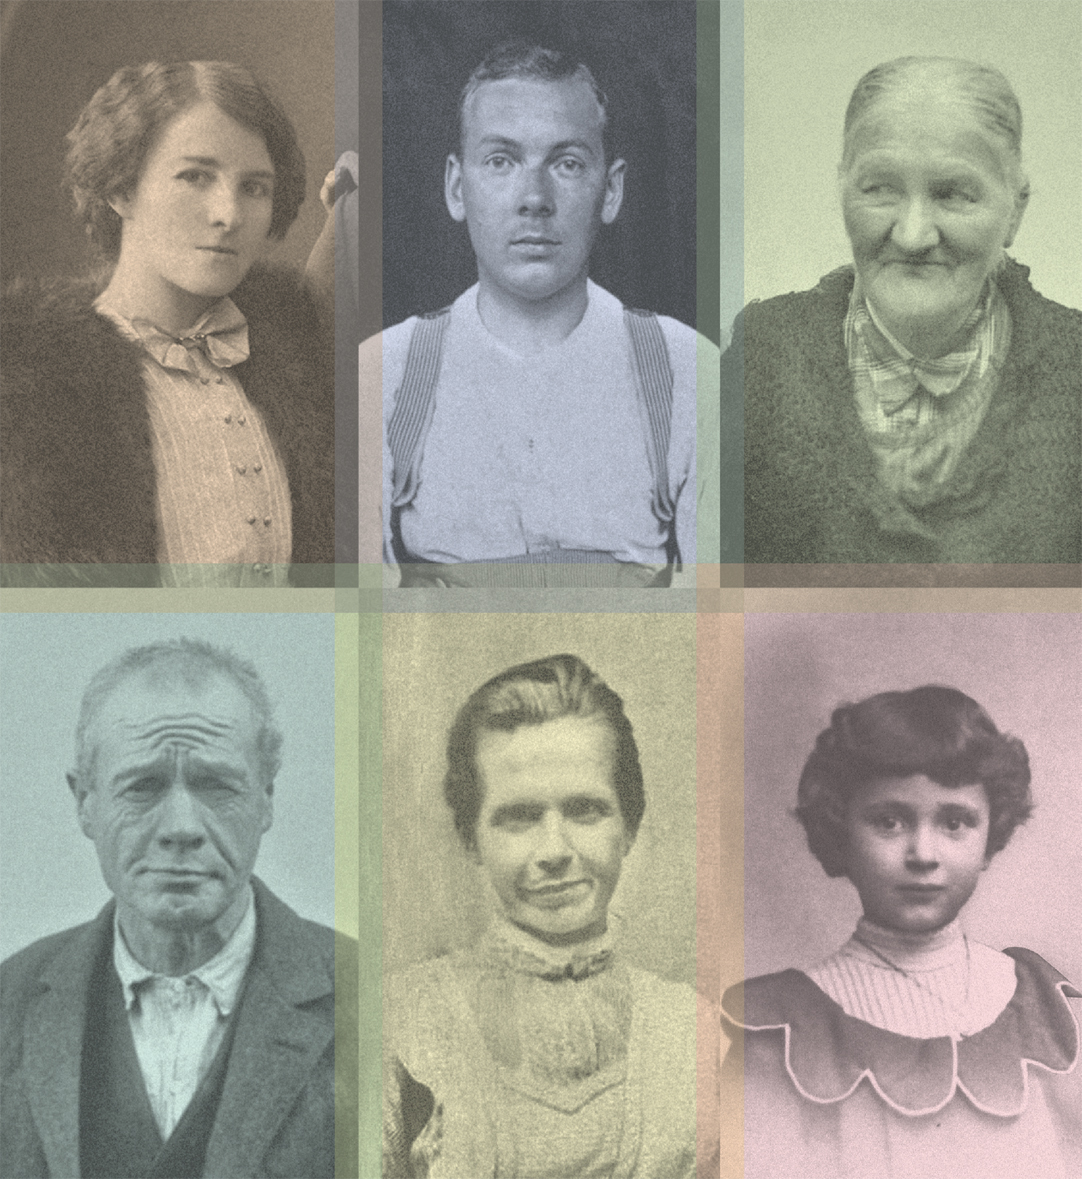 Porträts von sechs Menschen, Titelcollage des Gedenkbuchs für die Opfer der NS-Krankenmorde. © Braun Engels Gestaltung